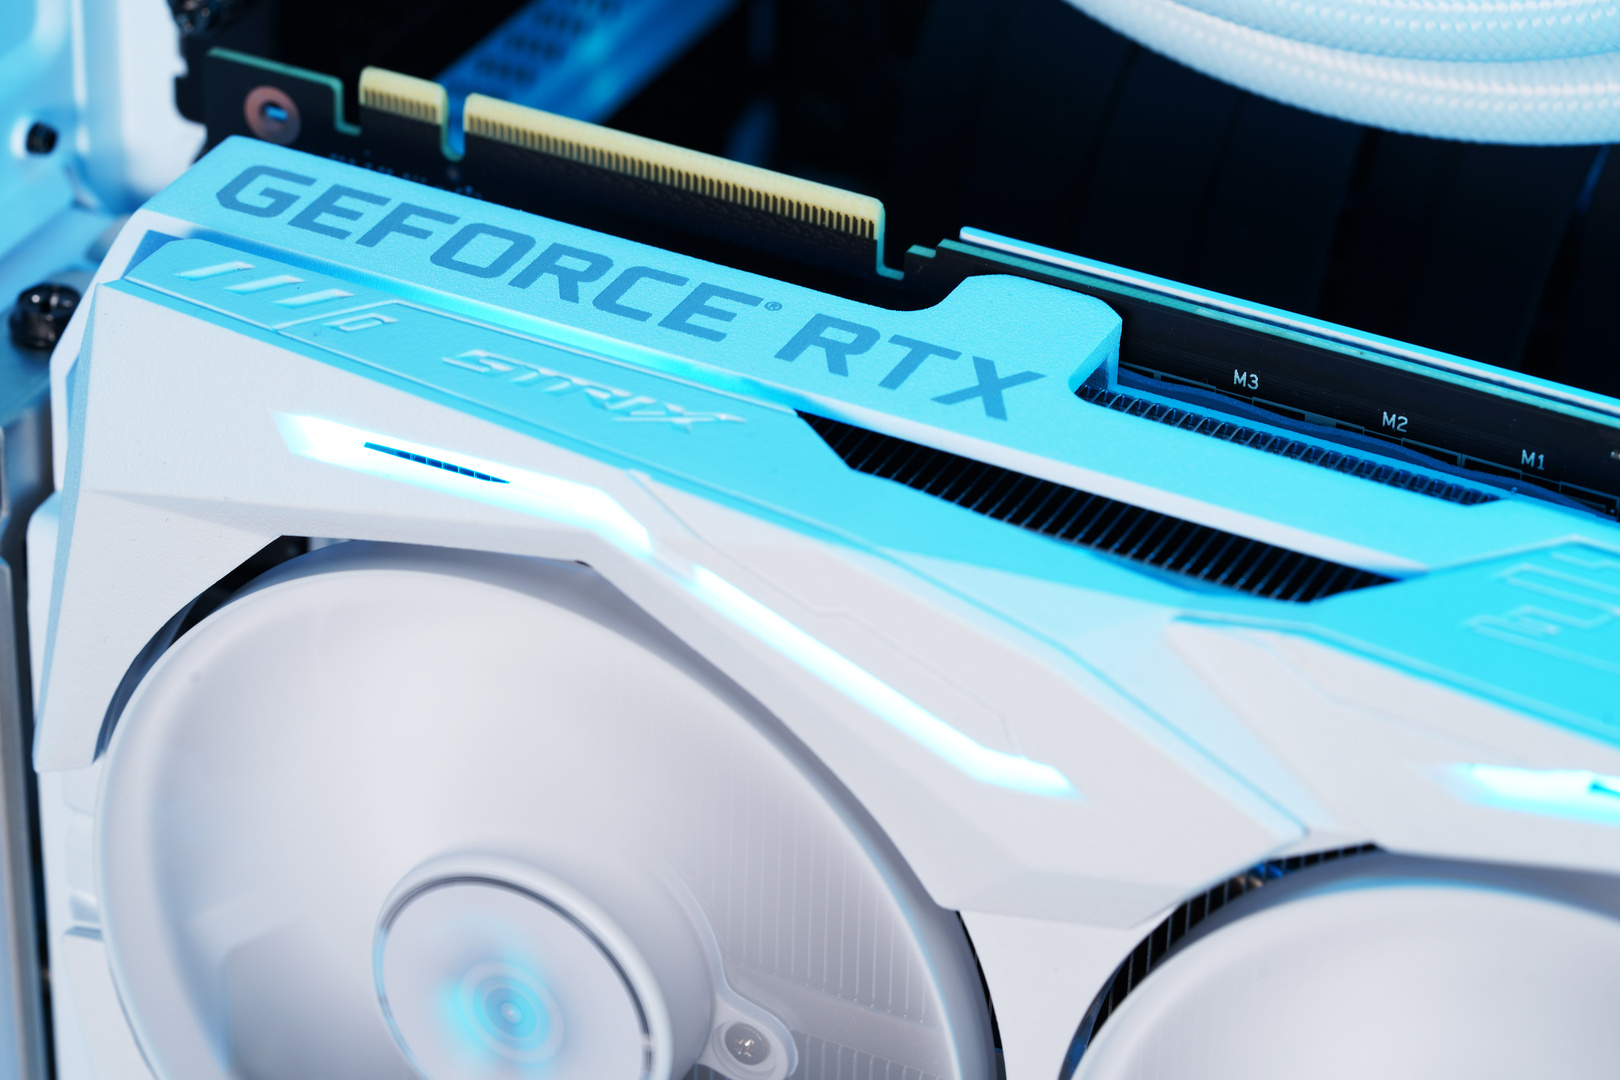 ROG Strix GeForce RTX 2080 Ti White Edition